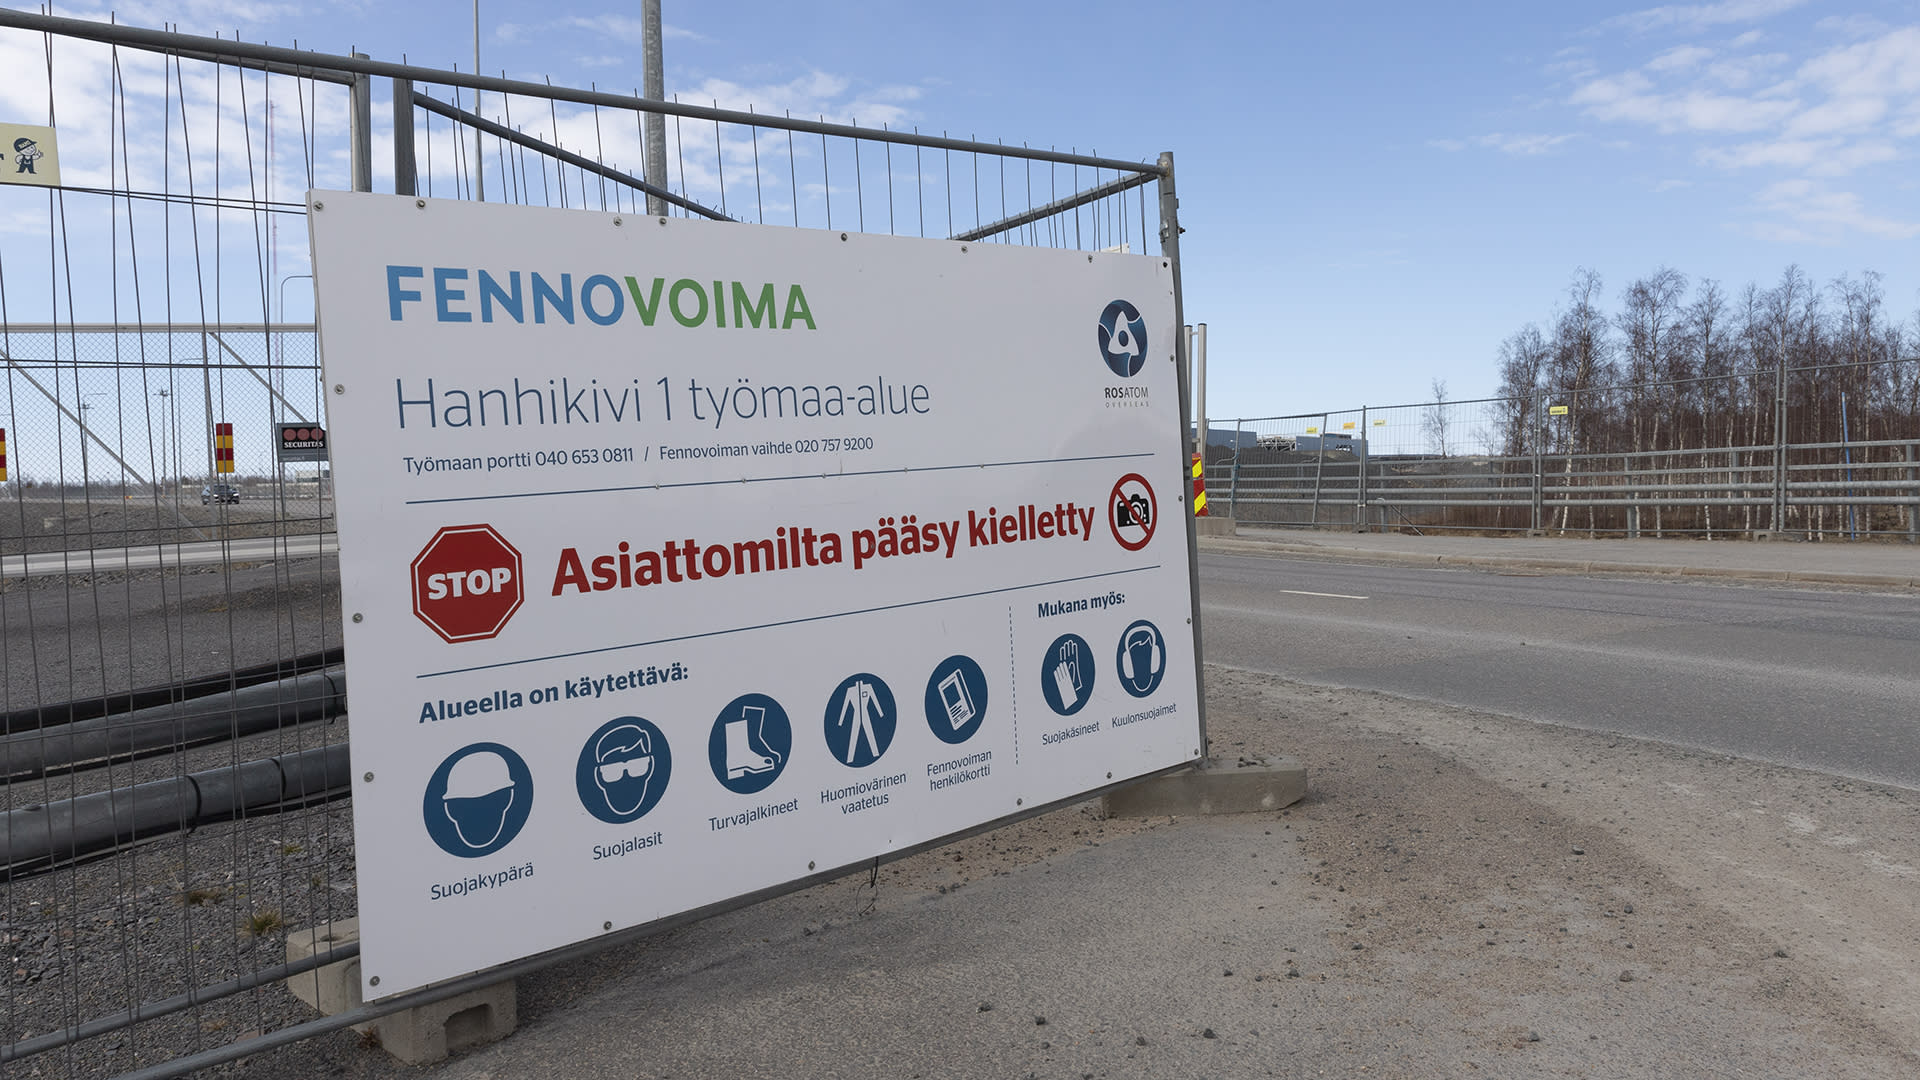 Fennovoima will lay off 350 employees